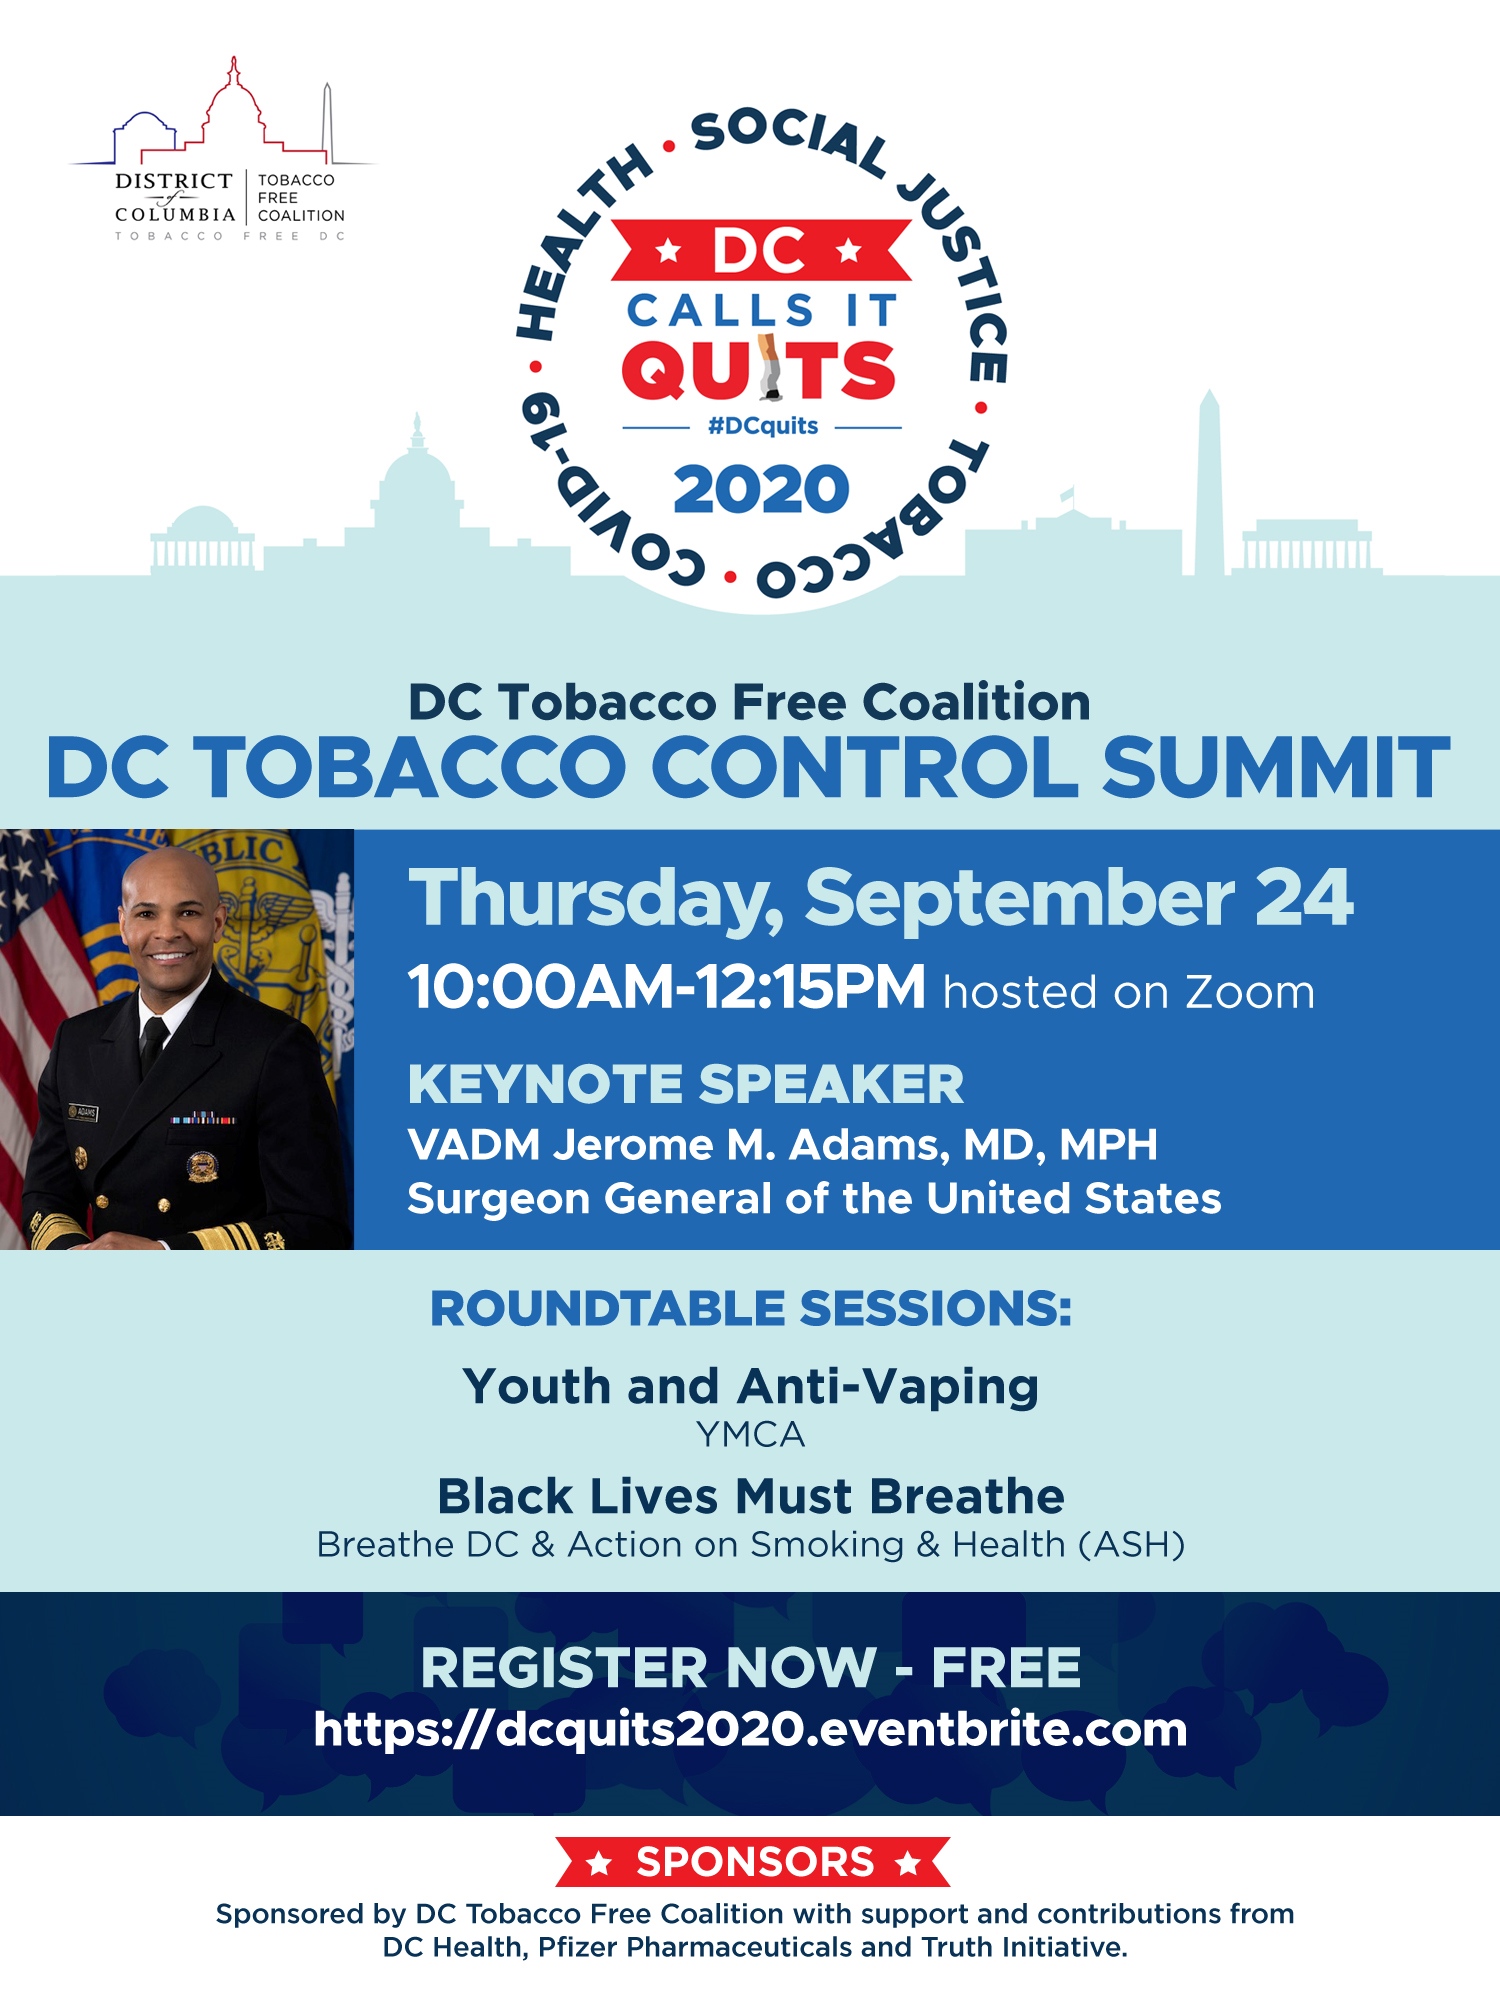 DCTFC-summit-flyer-2020